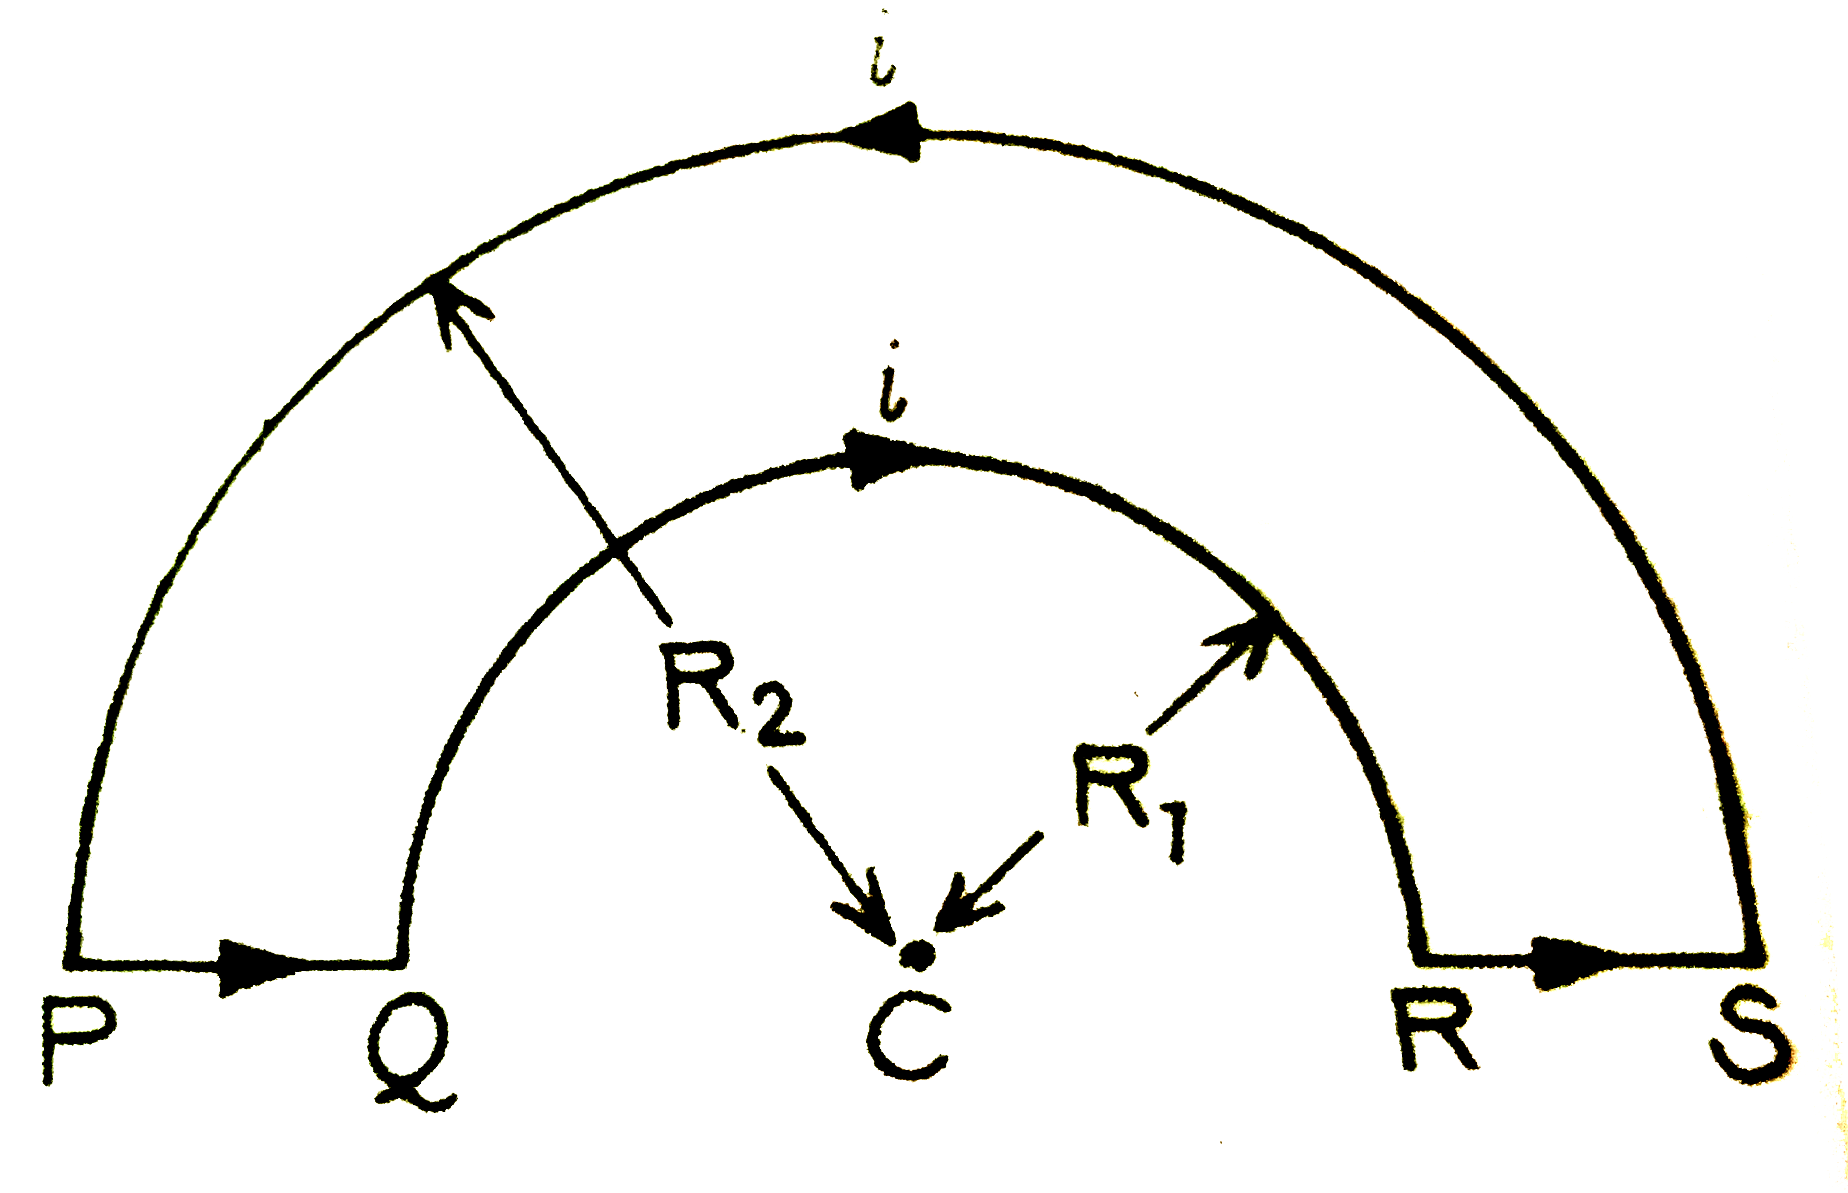 संलग्न चित्र में प्रदर्शित तारों के लूप PQRSP  में जो R(1) व R(2) त्रिज्याओं के दो अर्द्ध-वृताकार तारों को जोड़कर बना है, धारा i बहती है।  केंद्र C पर चुंबकीय क्षेत्र की तीव्रता तथा दिशा ज्ञात कीजिए ।